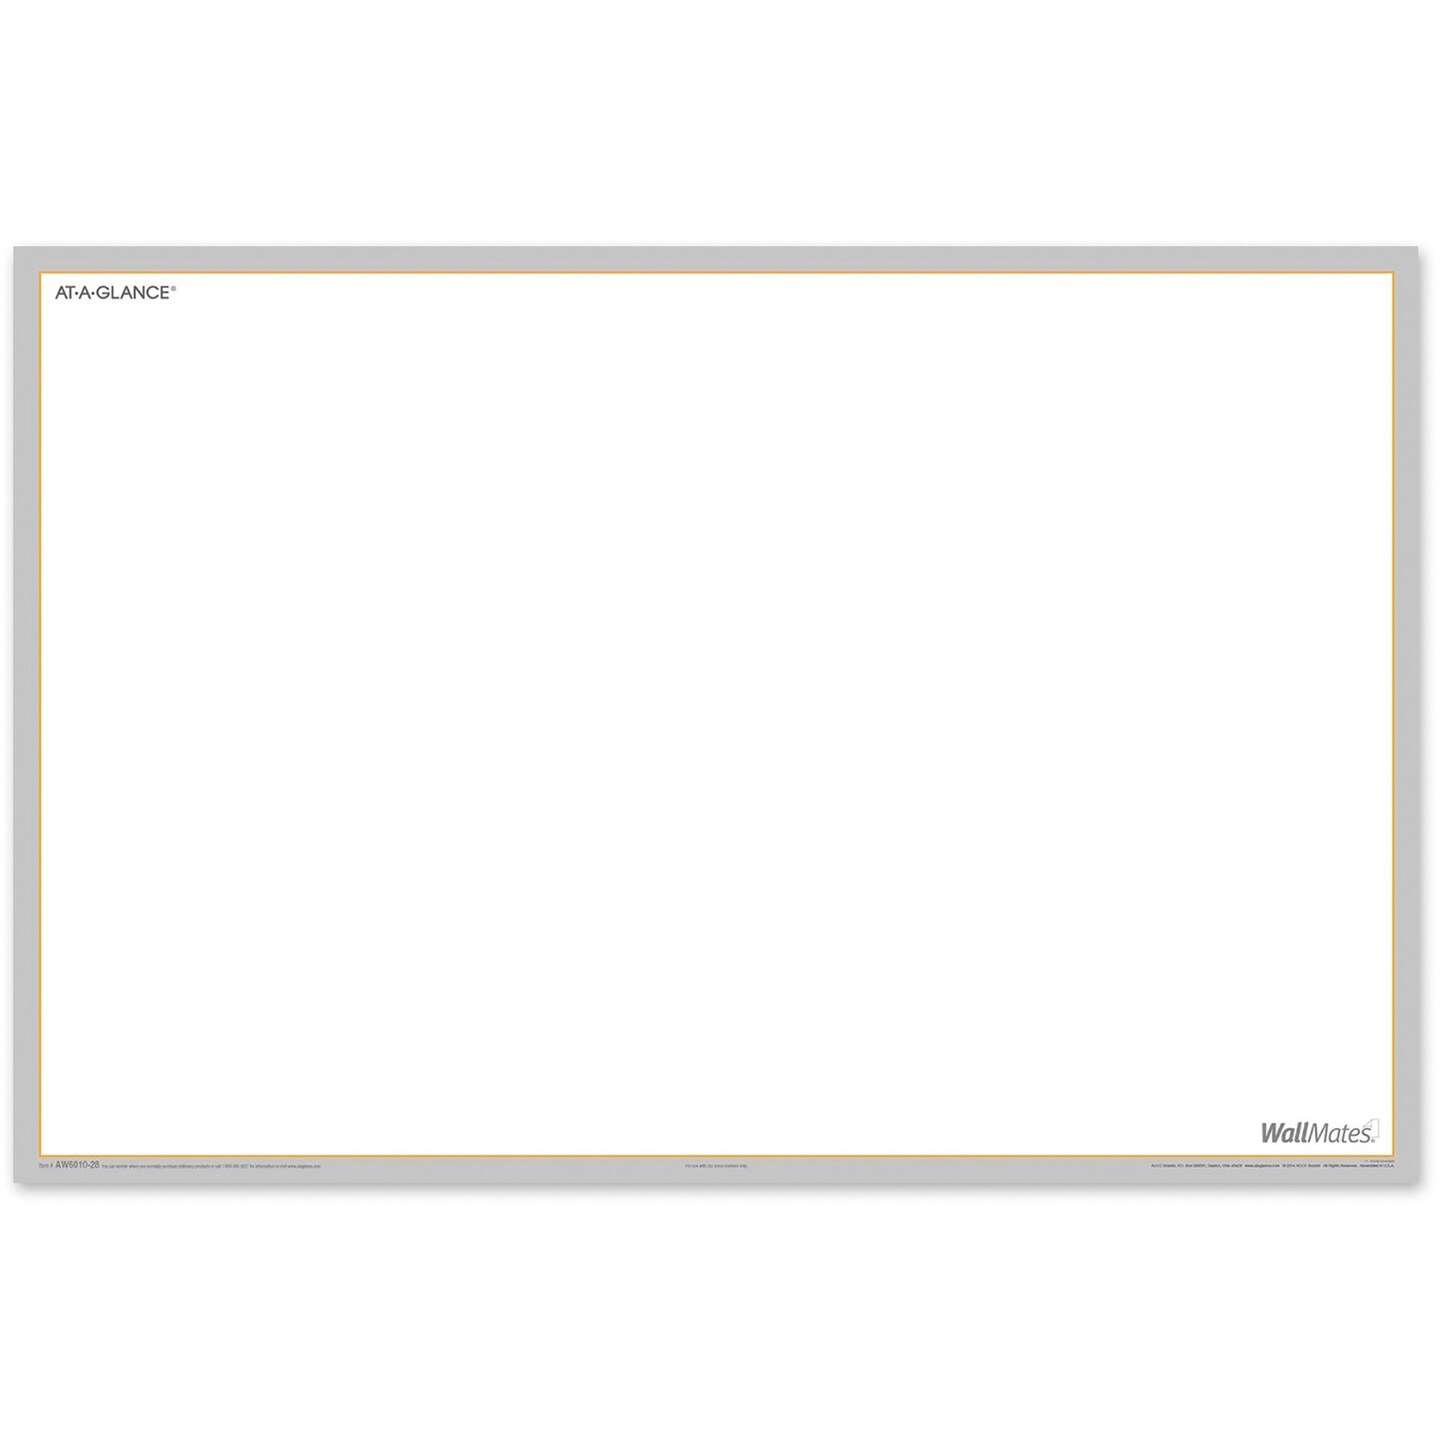 At-A-Glance WallMates Self-Adhesive Dry Erase Writing Surface, 36 x 24